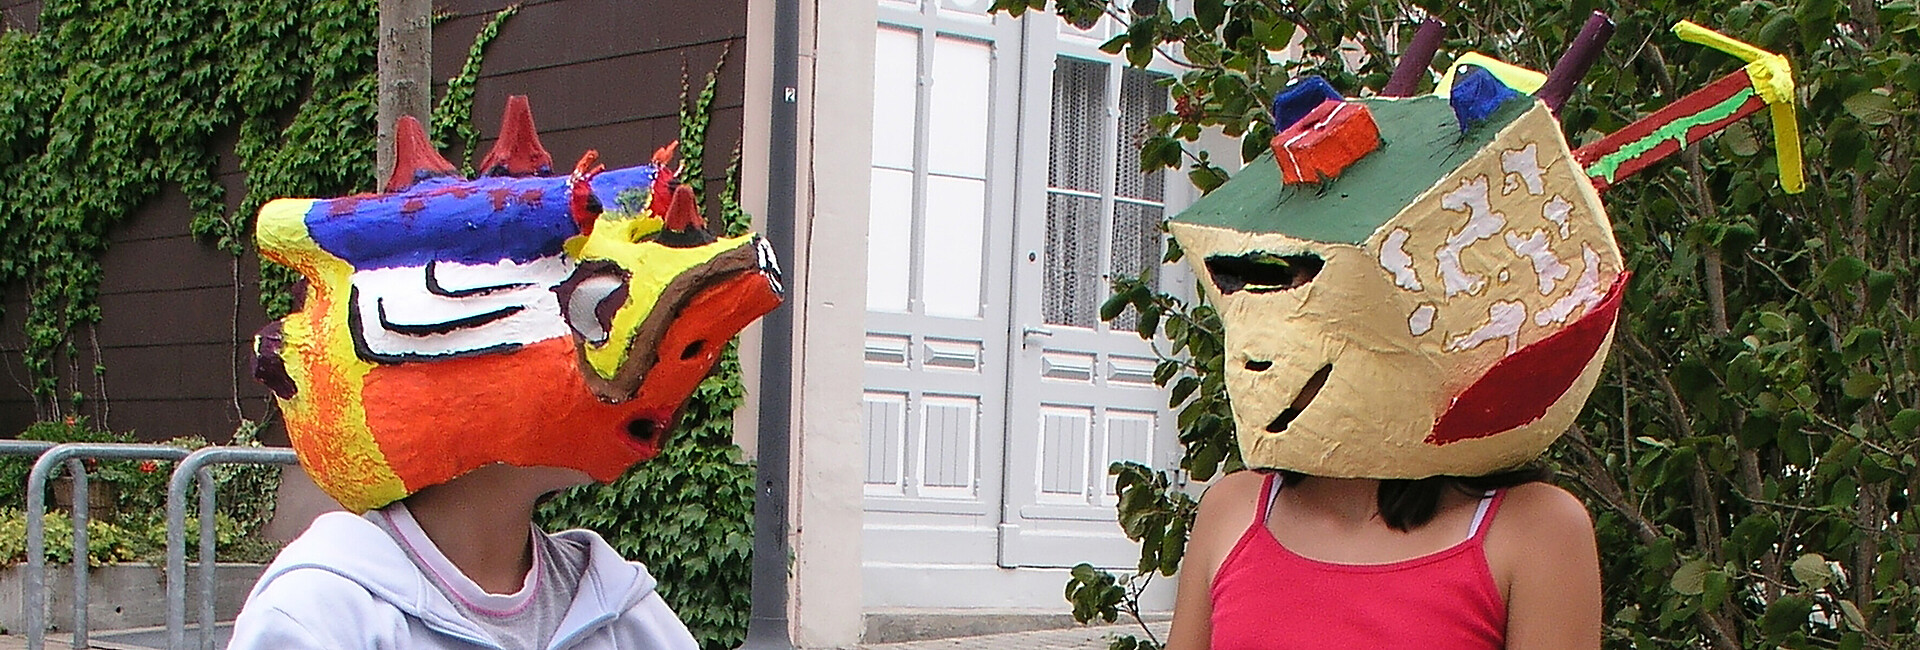 Schülerin und Schüler im Kunstunterricht, die sich gegenübersitzend ansehen und dabei selbst gestaltete bunte Masken tragen